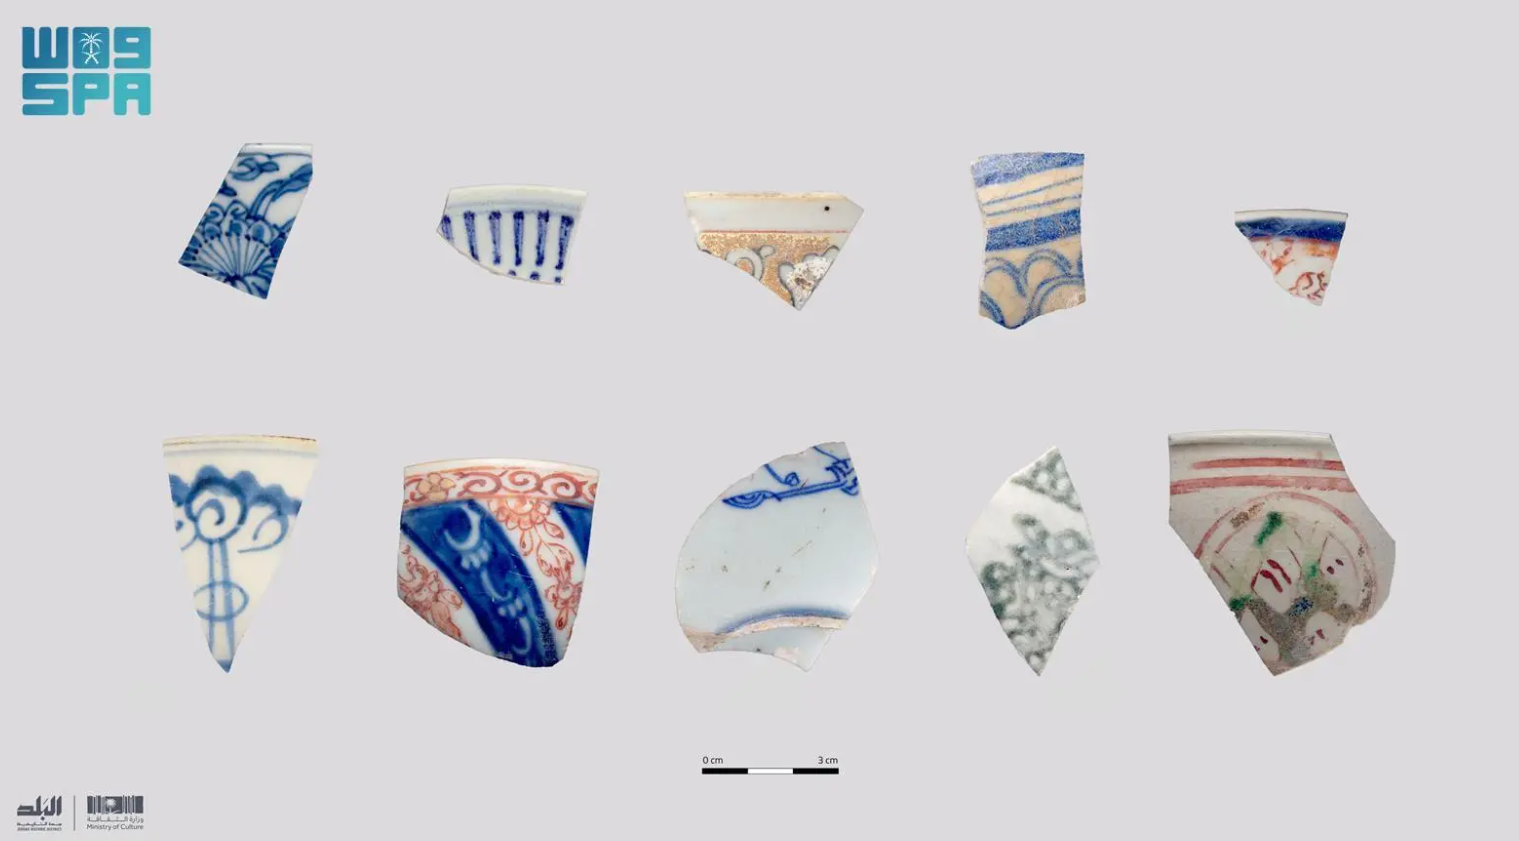 السعودية.. العثور على 25 ألفا من المواد الأثرية يعود أقدمها إلى عصر الخلفاء الراشدين (صور)